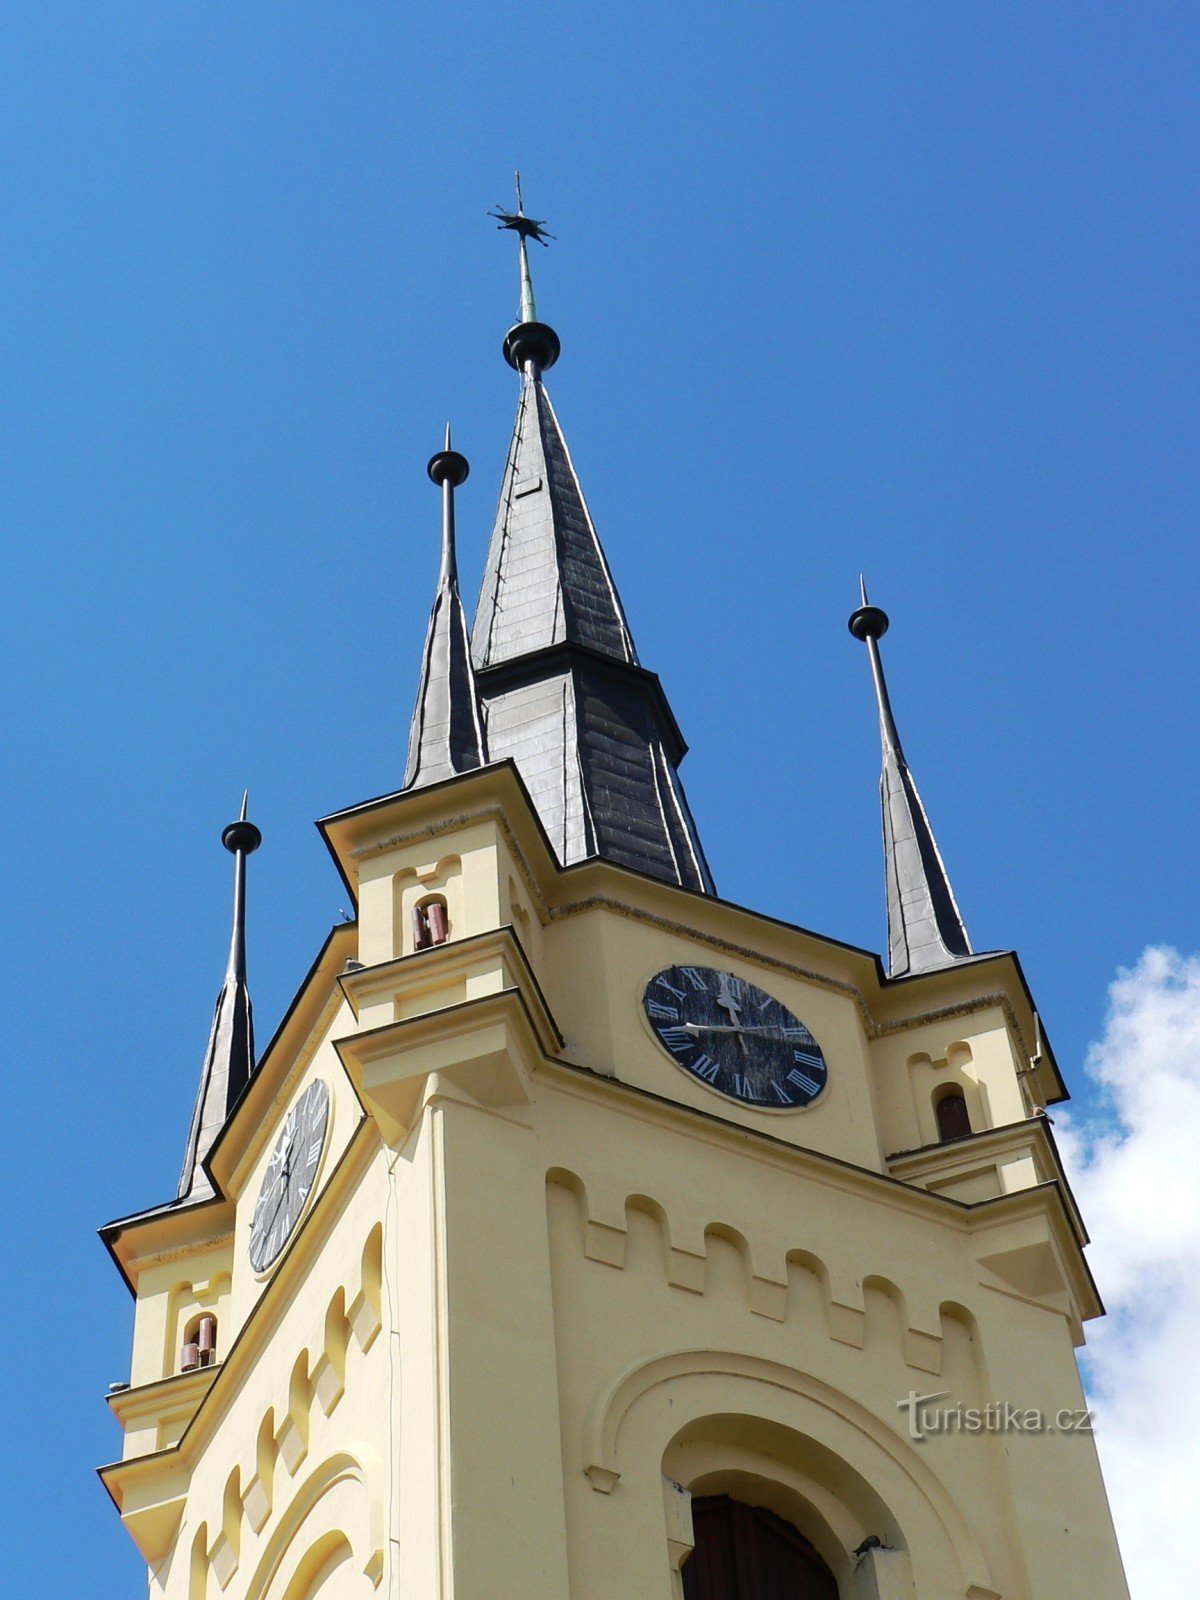 Čáslav - a Cseh Evangélikus Testvérek temploma